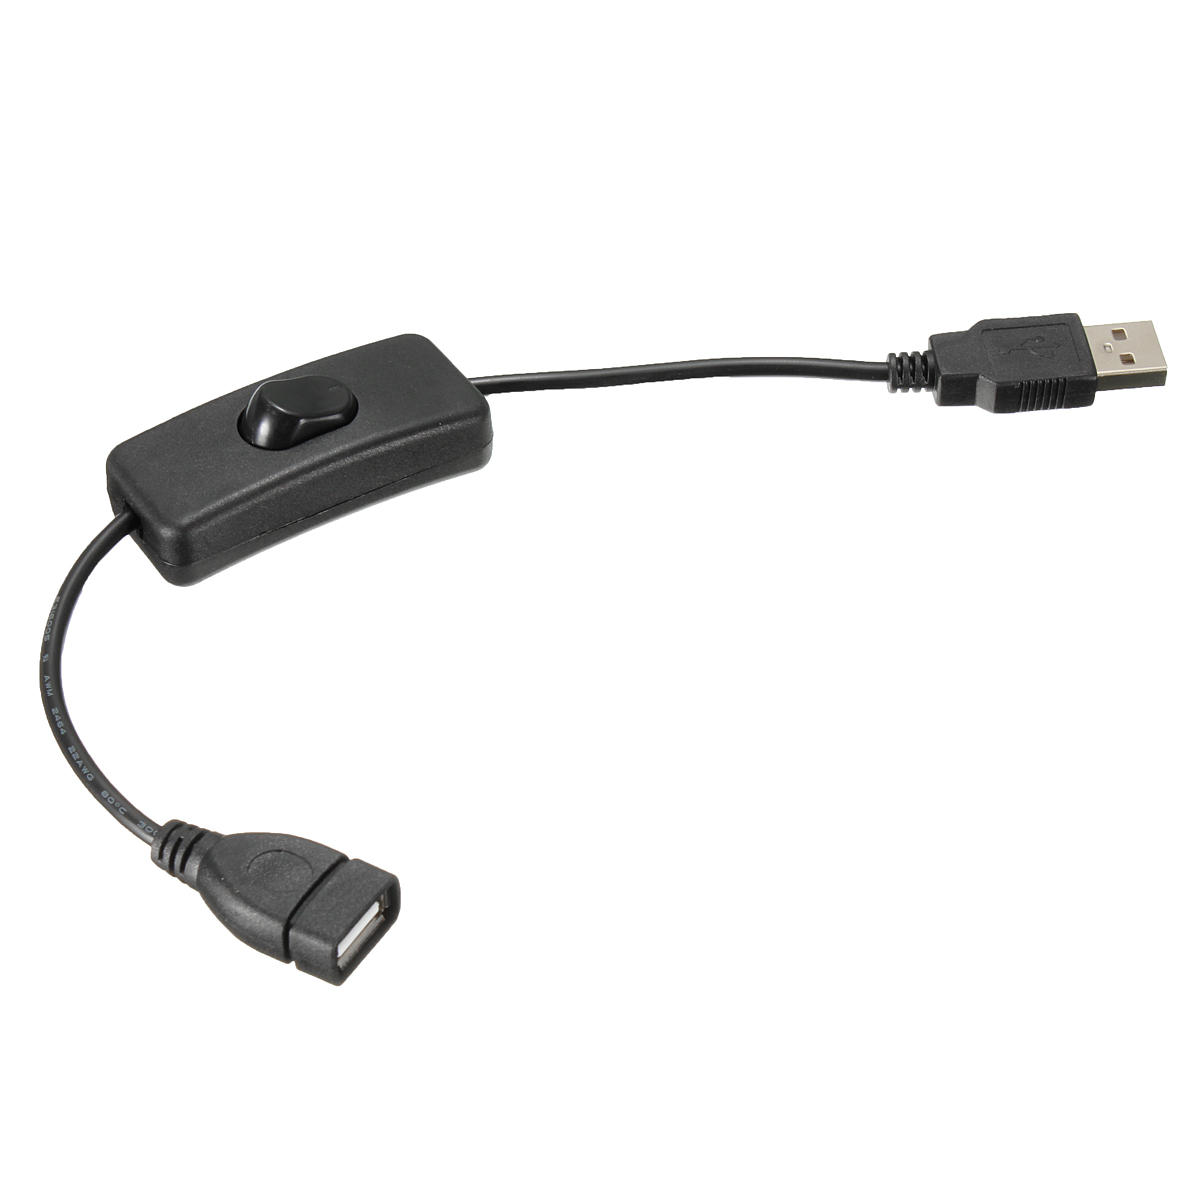 

Кабель питания USB с переключателем включения / выключения для Raspberry Pi